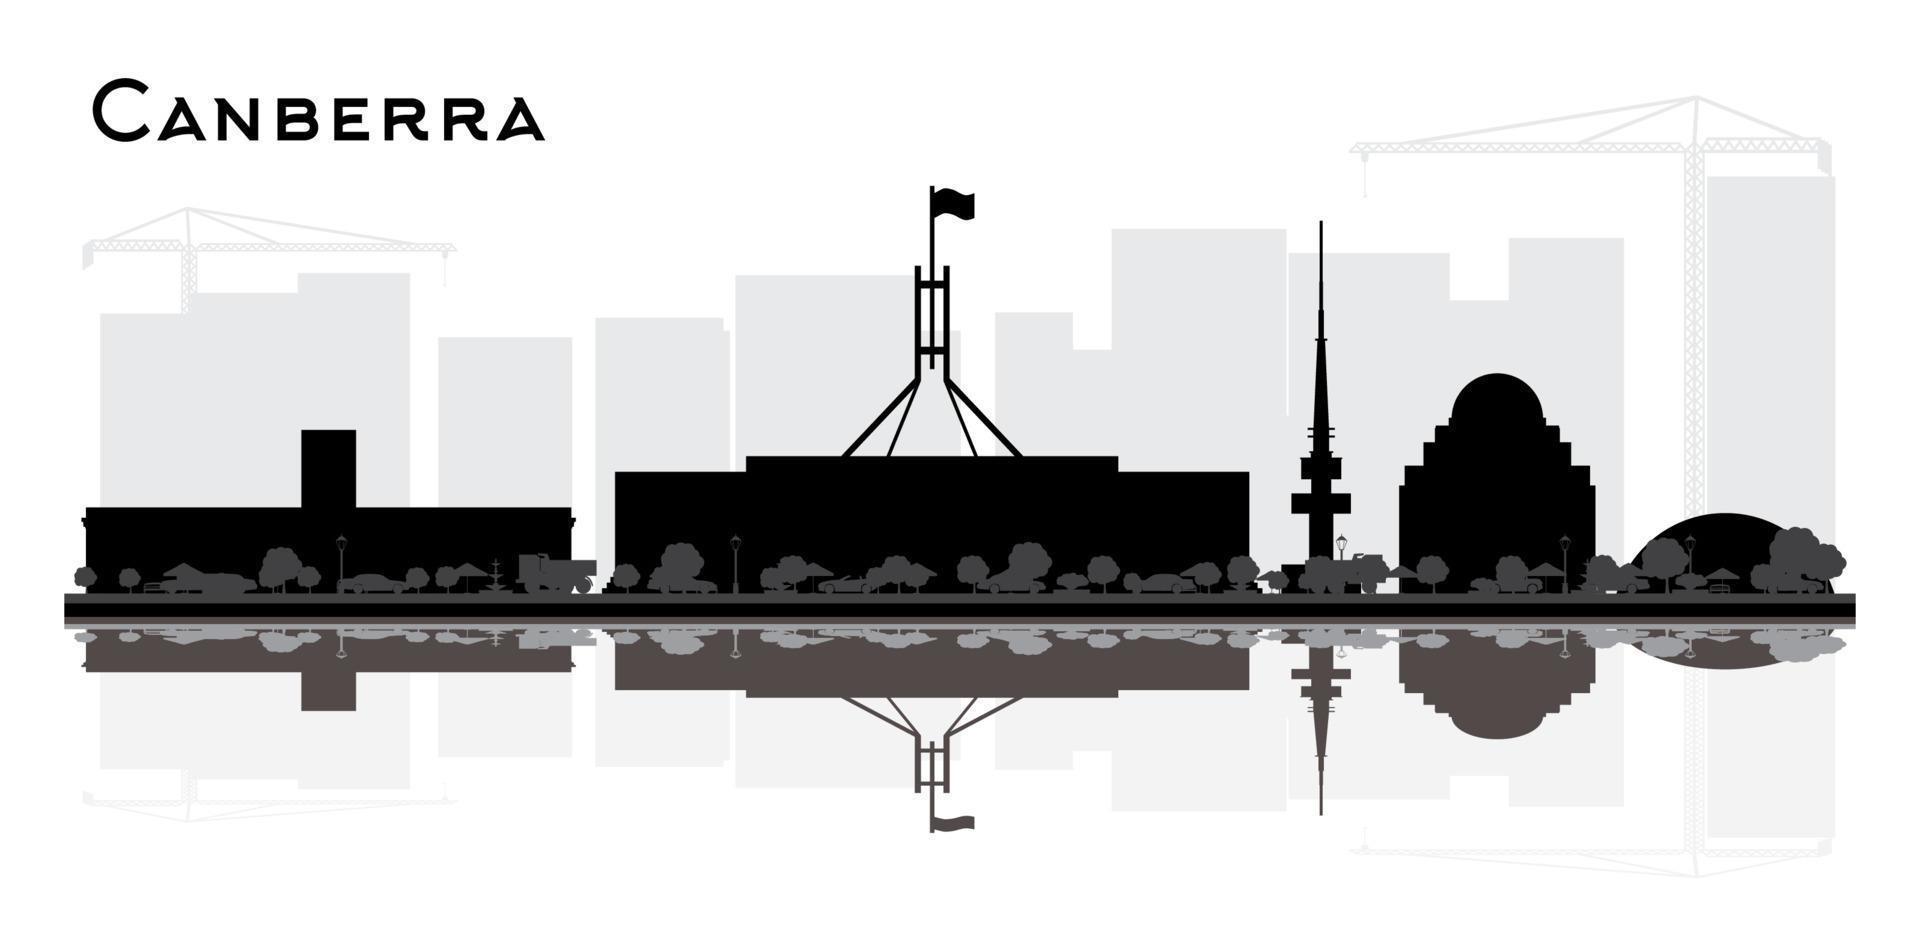 canberra australien city skyline silhouette mit schwarzen gebäuden und reflexionen isoliert auf weiß. vektor